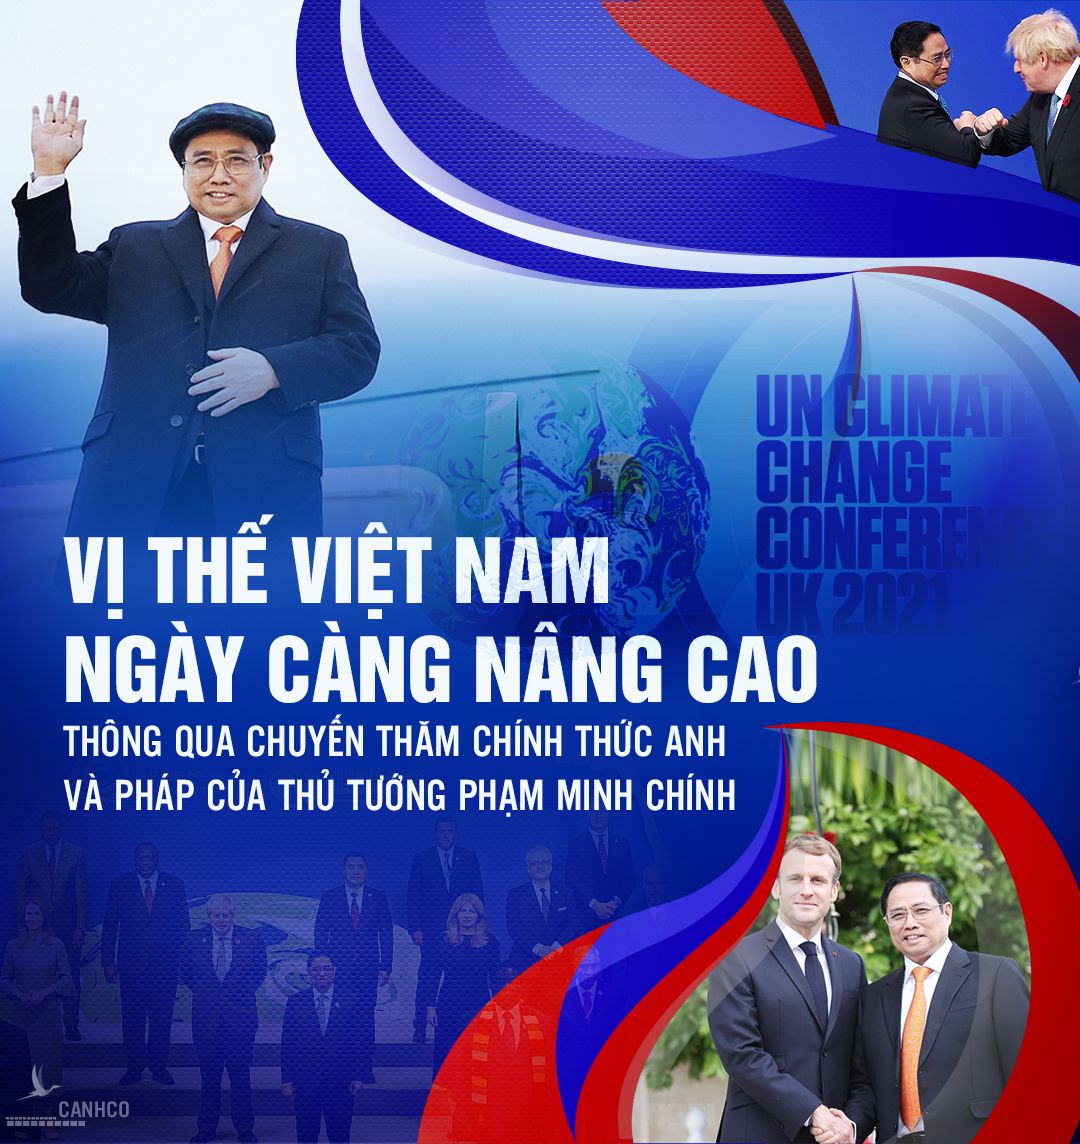 Vị thế Việt Nam ngày càng nâng cao qua chuyến thăm chính thức Anh và Pháp